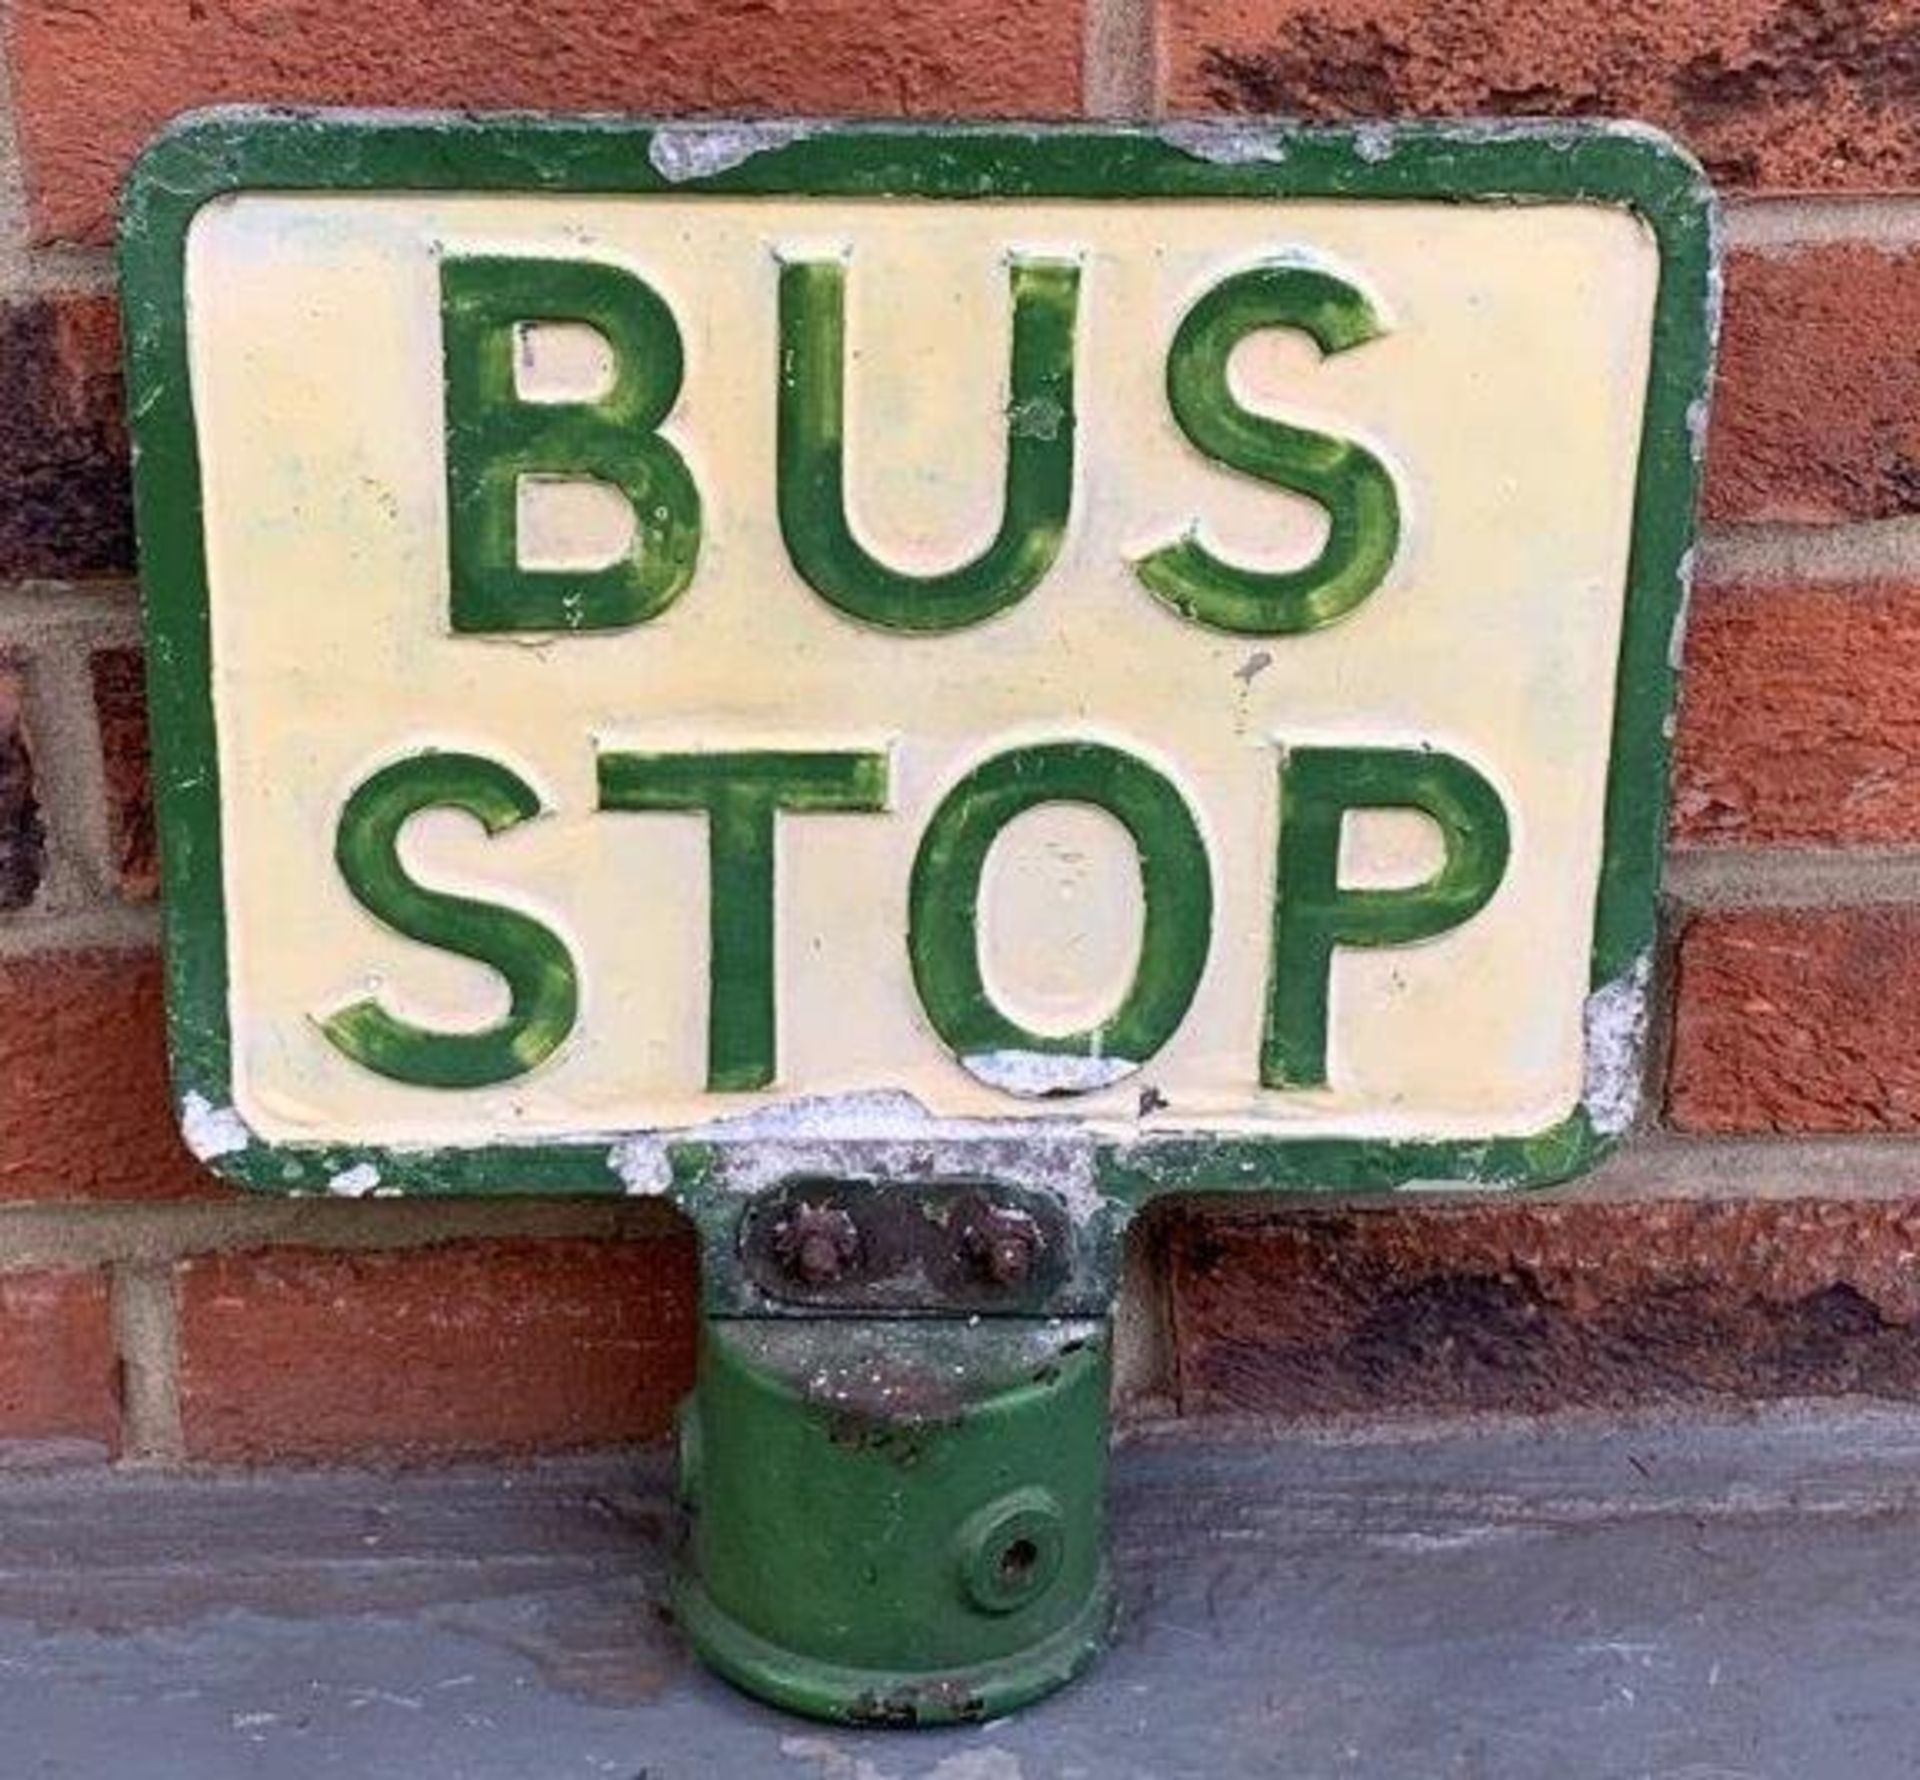 Cast Aluminium Bus Stop Post Sign